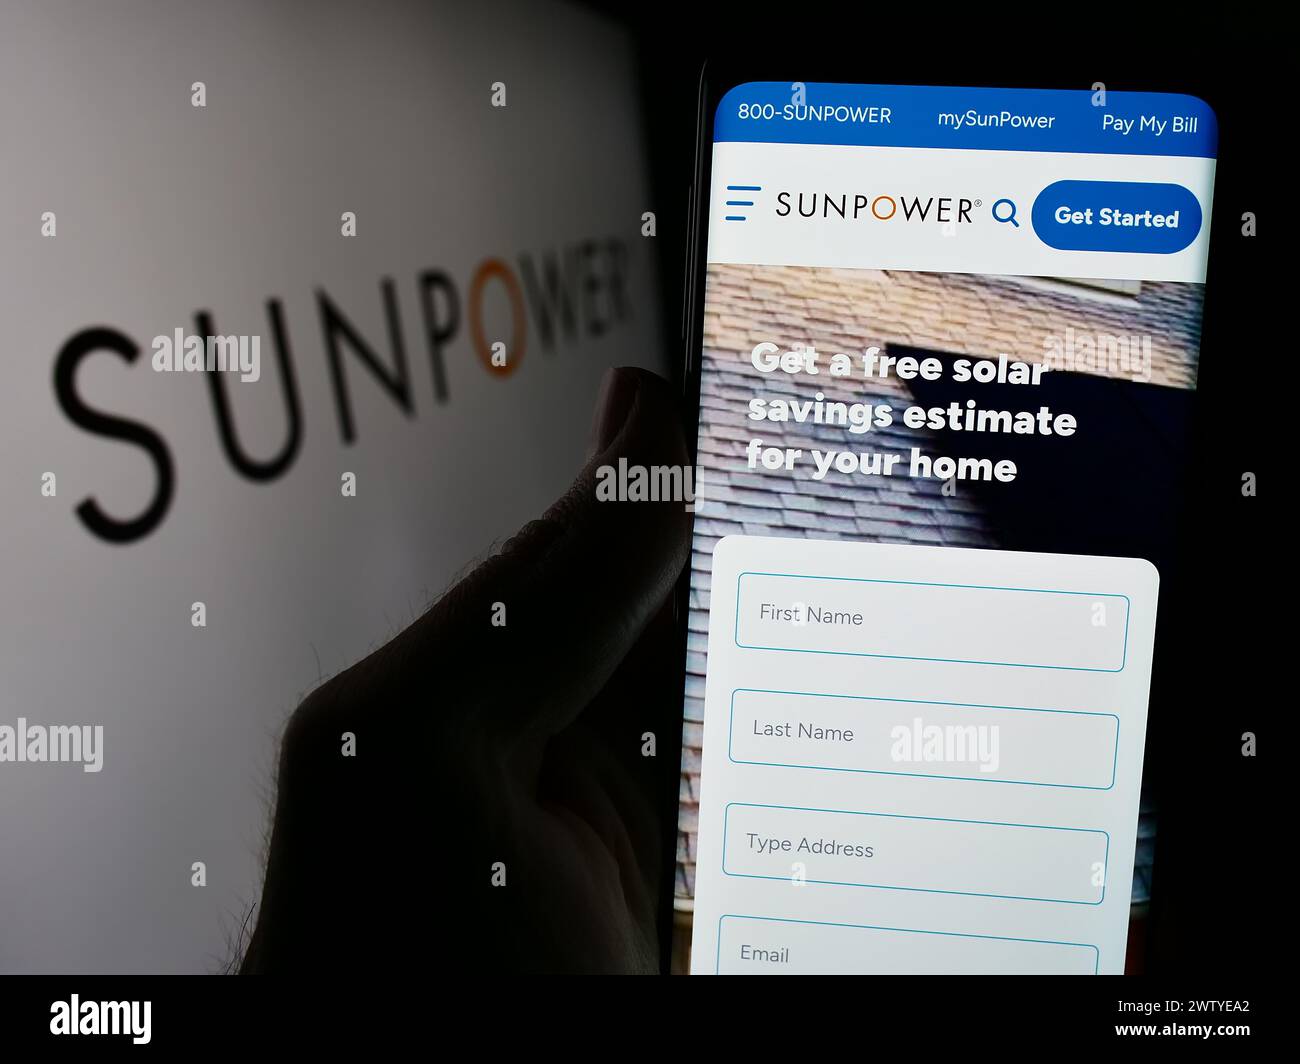 Persona que sostiene el teléfono celular con la página web de la compañía fotovoltaica estadounidense SunPower Corporation frente al logotipo. Enfoque en el centro de la pantalla del teléfono. Foto de stock